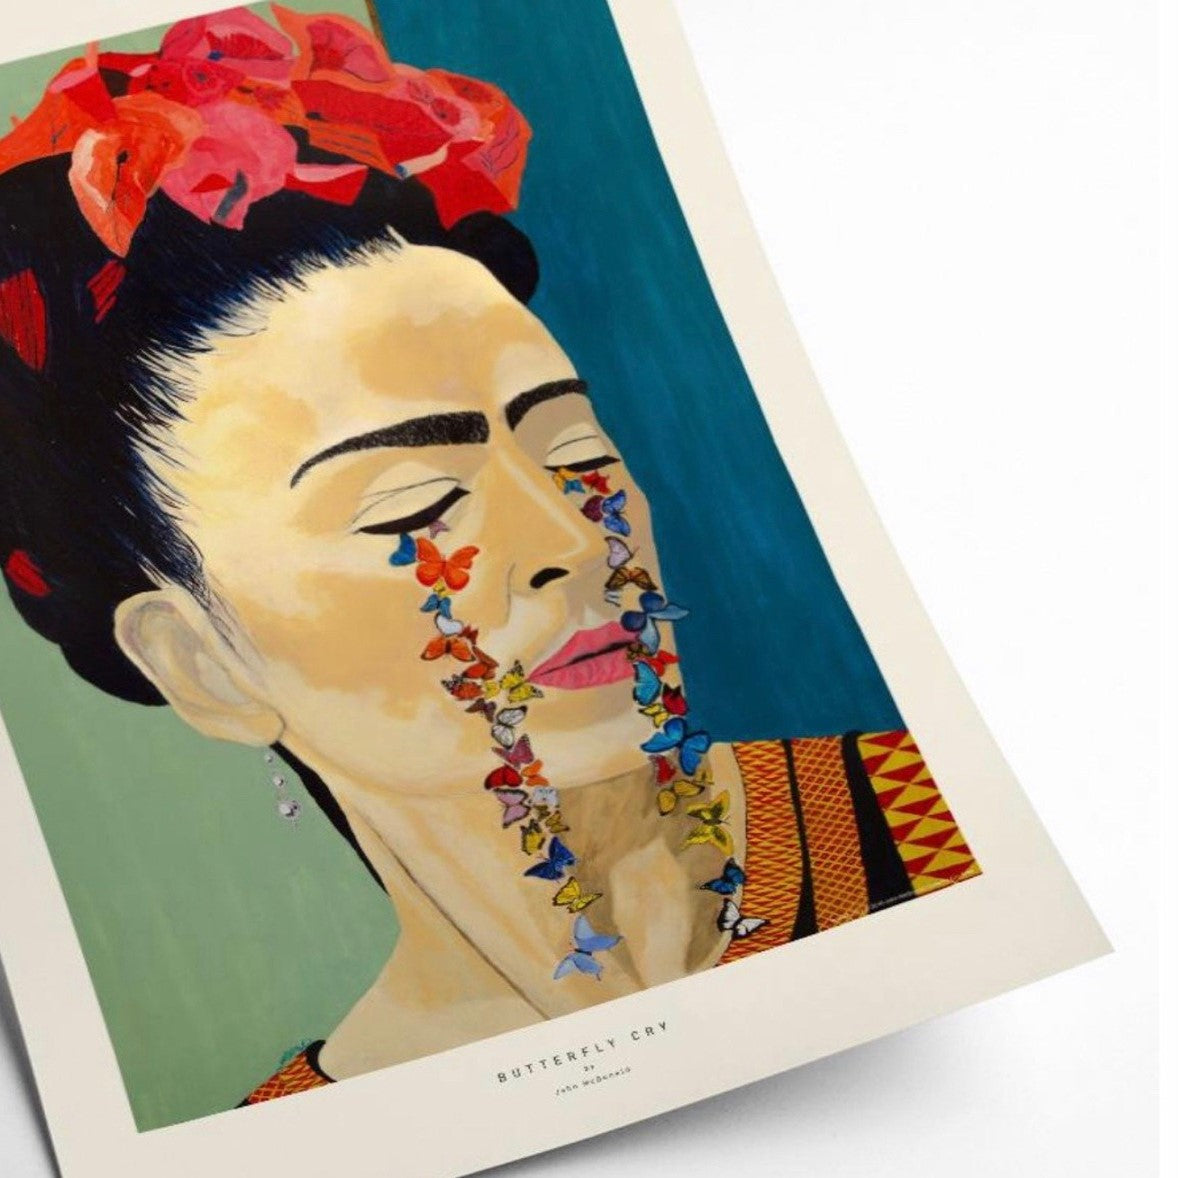 Frida Kahlo, legend and cult figure